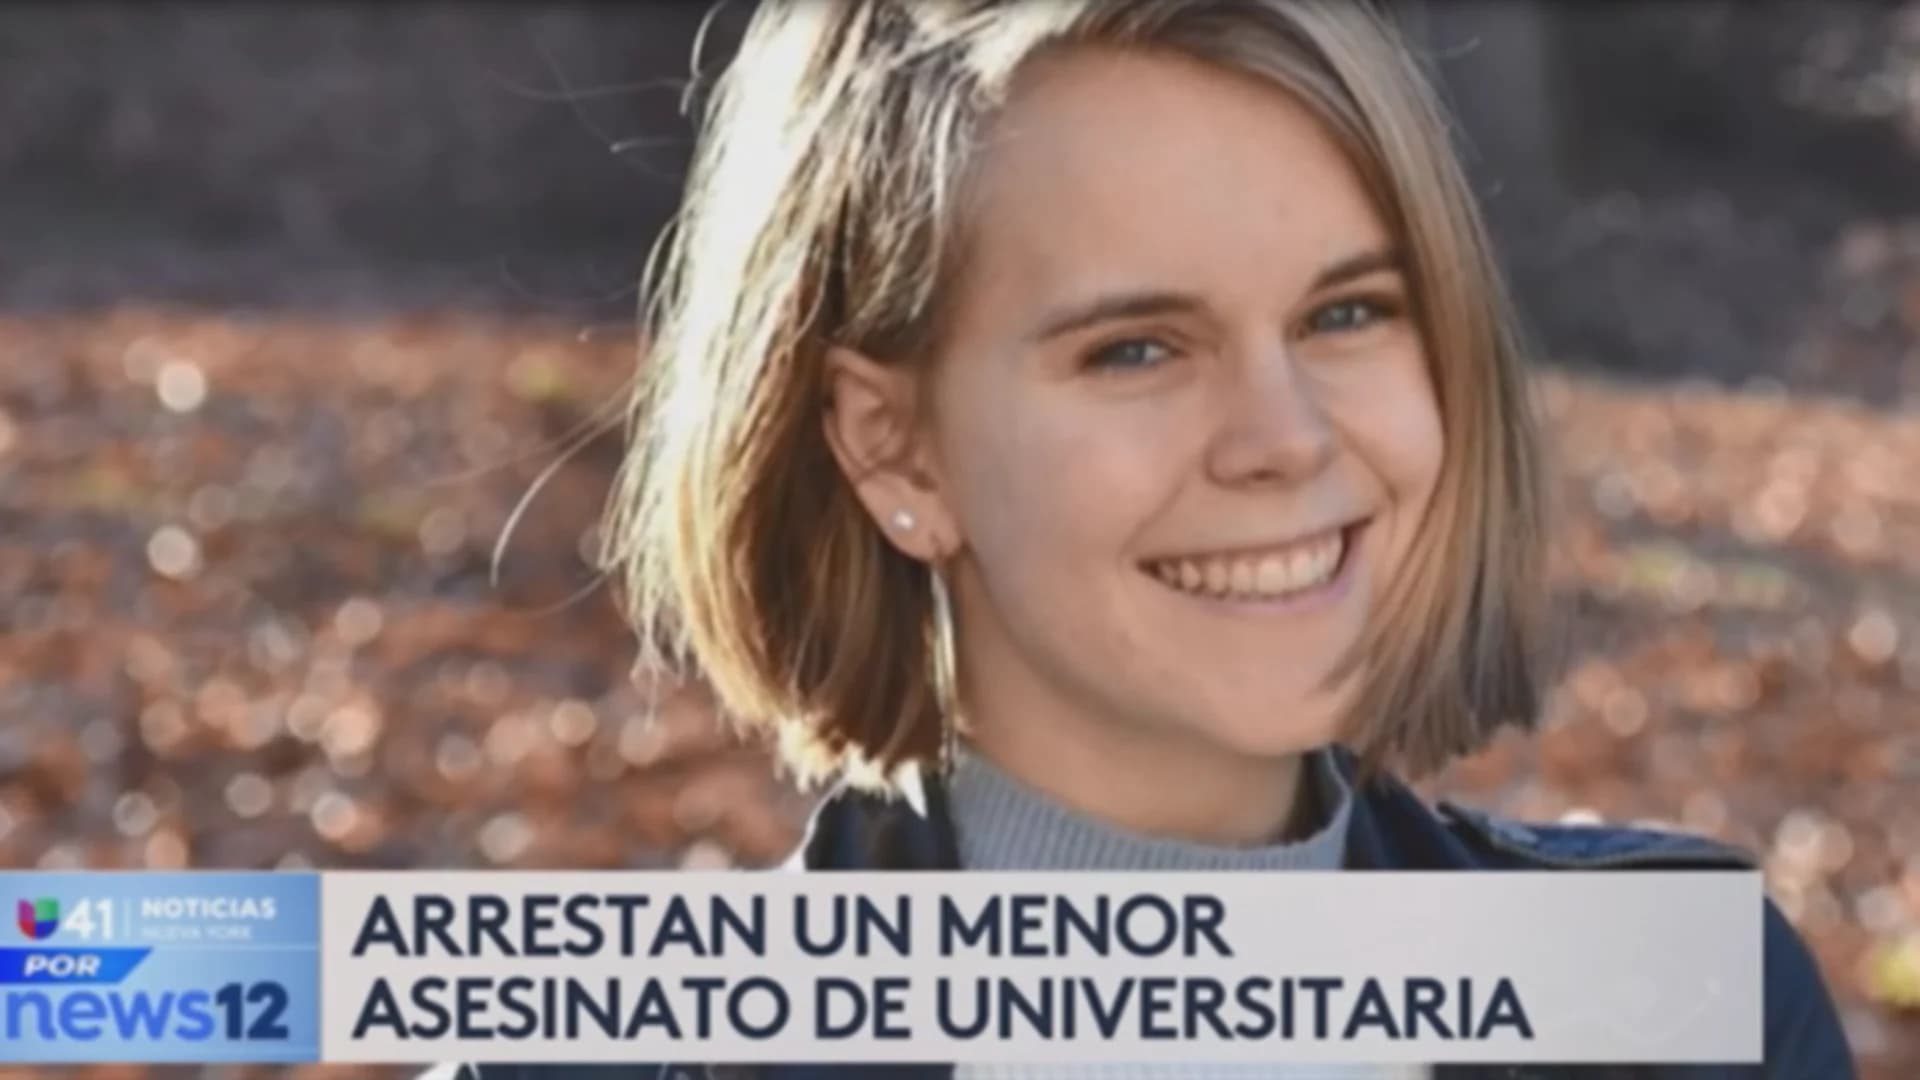 Univision 41 News Brief: Arrestan menor por el asesinato de universitaria